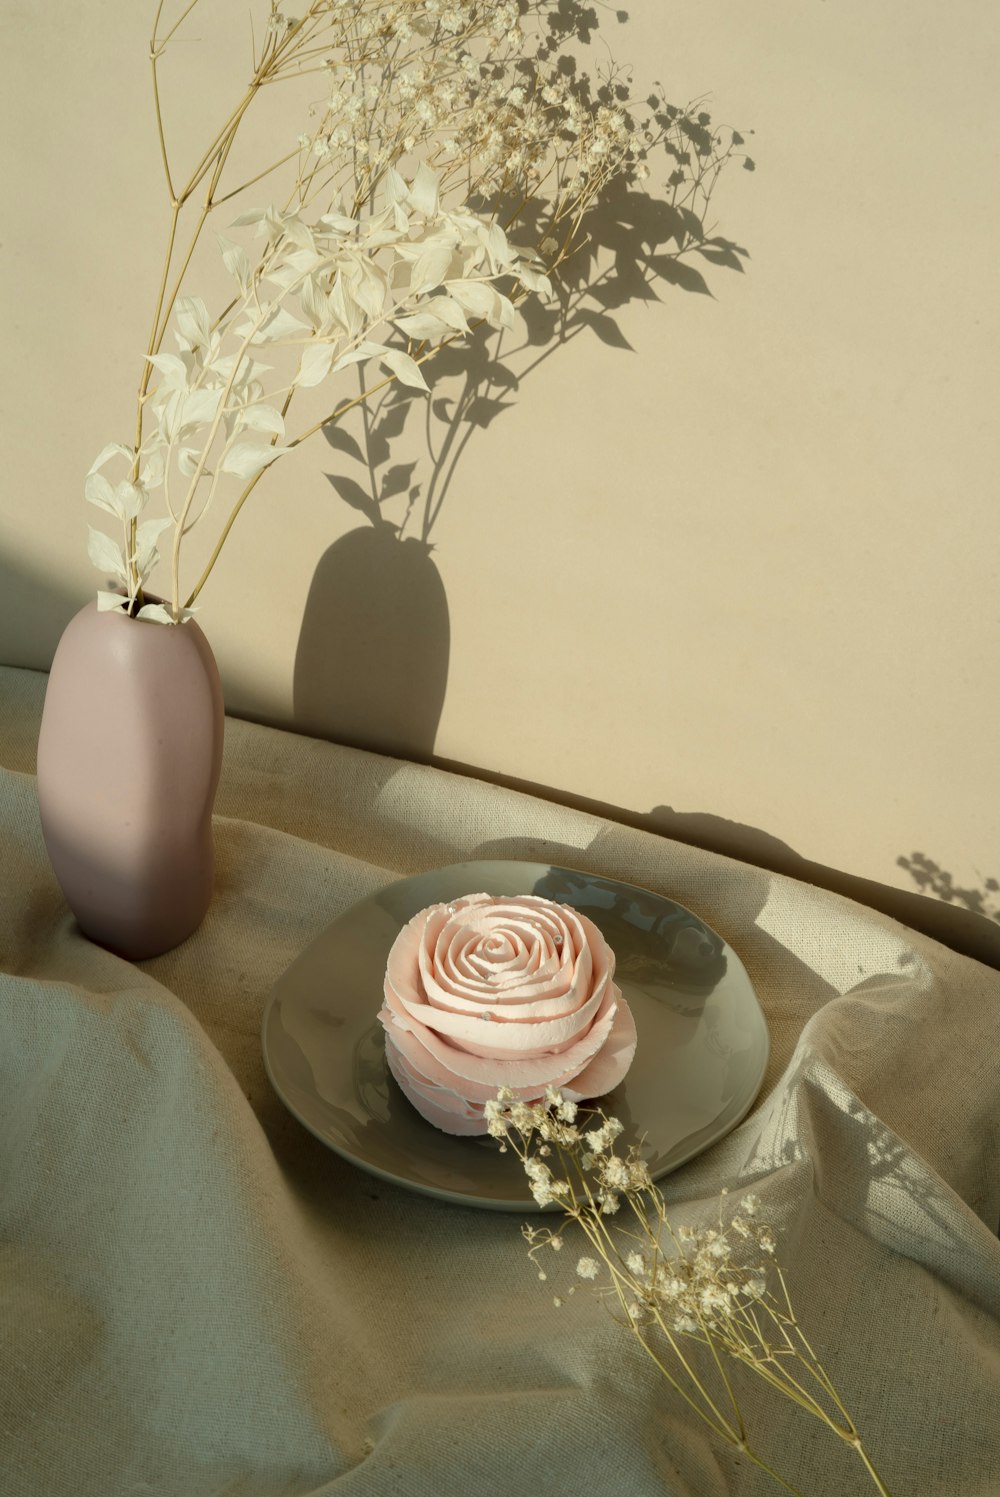 rosa rosa in vaso di ceramica marrone sul tavolo di legno marrone